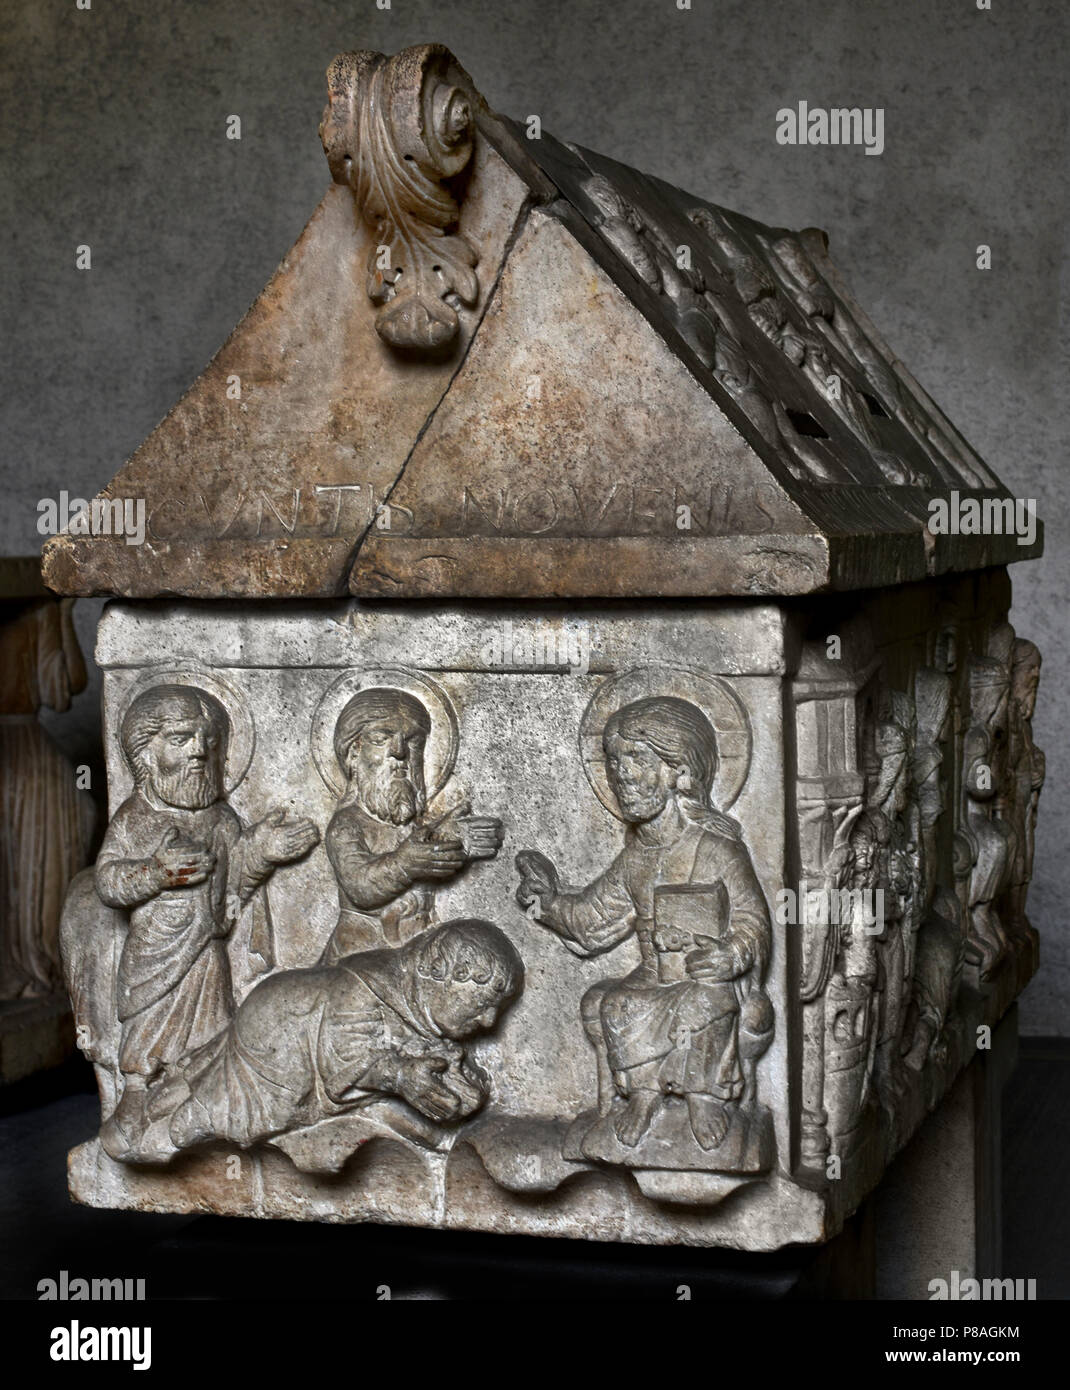 The basrelief of Saints Sergius and Bacchus (Sergio and Bacco) 1179 Museo di Castelvecchio  Verona. Italy Italian ( Master of 1179, Ark of Saints Sergius and Bacchus, 1179, stone ) Stock Photo